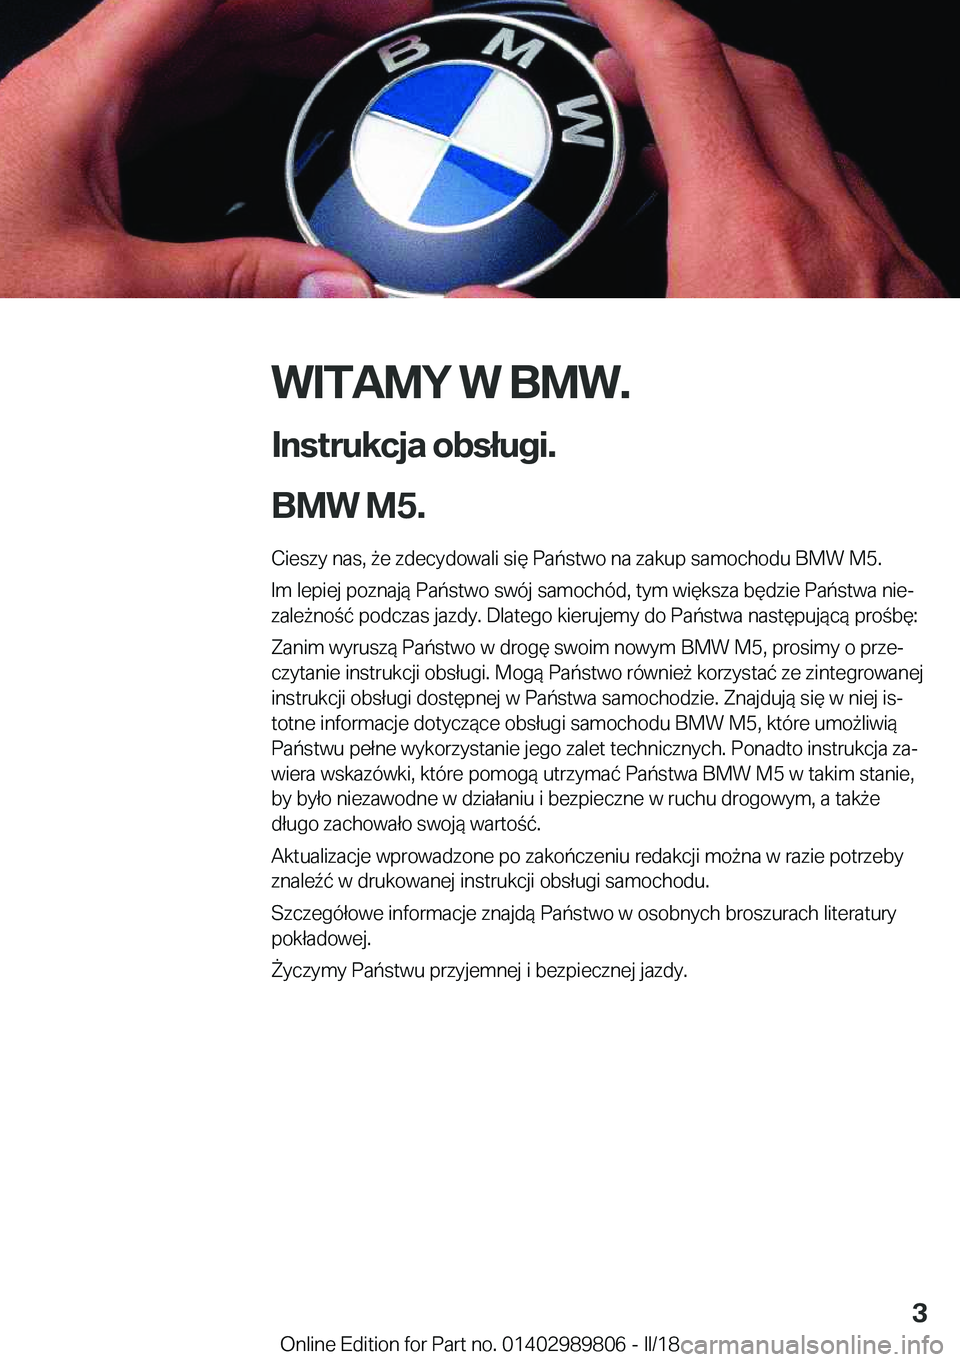 BMW M5 2018  Instrukcja obsługi (in Polish) �W�I�T�A�M�Y��W��B�M�W�.
�I�n�s�t�r�u�k�c�j�a��o�b�s�ł�u�g�i�.
�B�M�W��M�5�. �C�i�e�s�z�y� �n�a�s�,�  9�e� �z�d�e�c�y�d�o�w�a�l�i� �s�i�